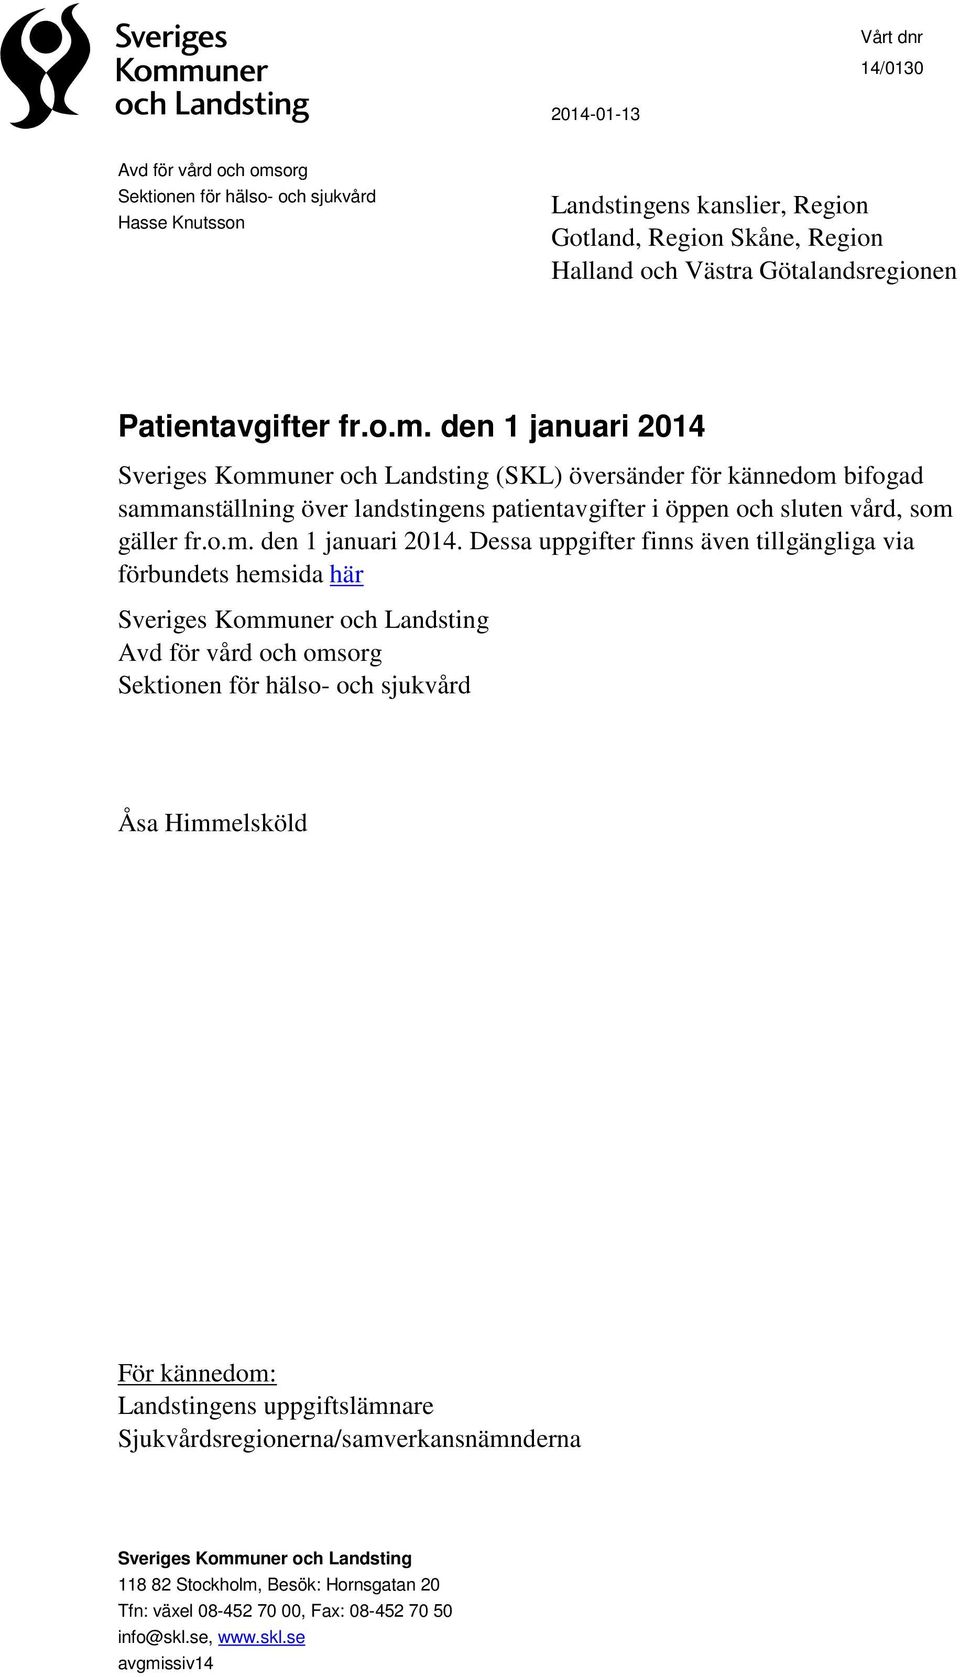 den 1 januari 2014 Sveriges Kommuner och Landsting (SKL) översänder för kännedom bifogad sammanställning över landstingens patientavgifter i öppen och sluten vård, som gäller fr.o.m. den 1 januari 2014.